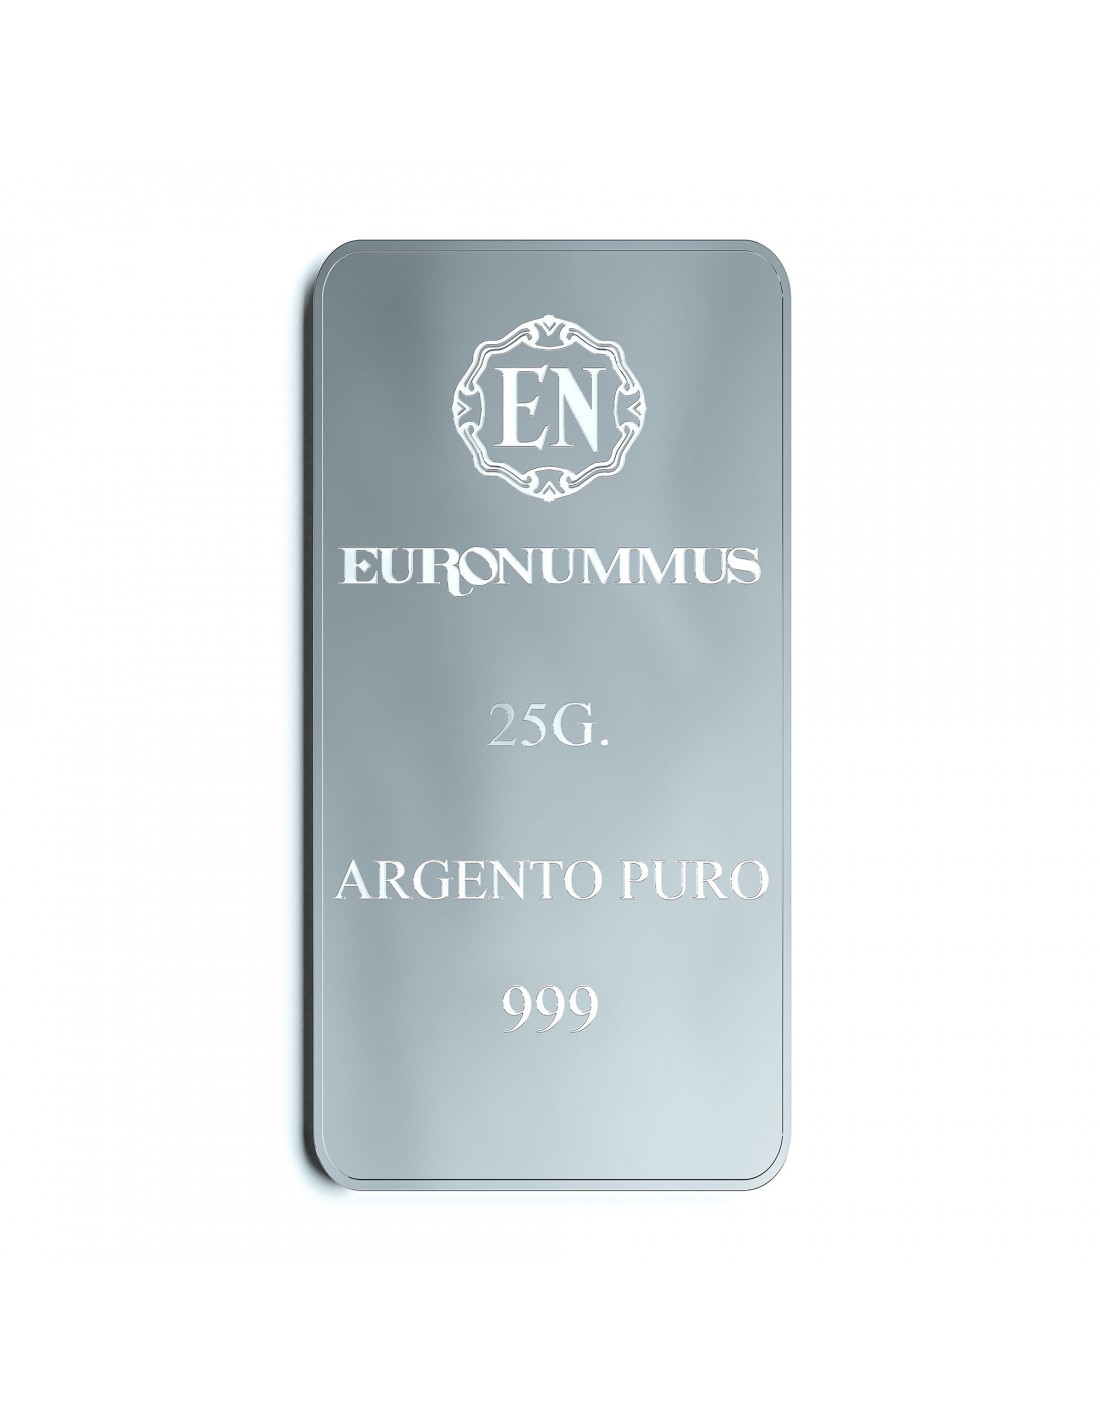 Lingotto da 25 grammi in argento puro 999/1000 - Euronummus SpA